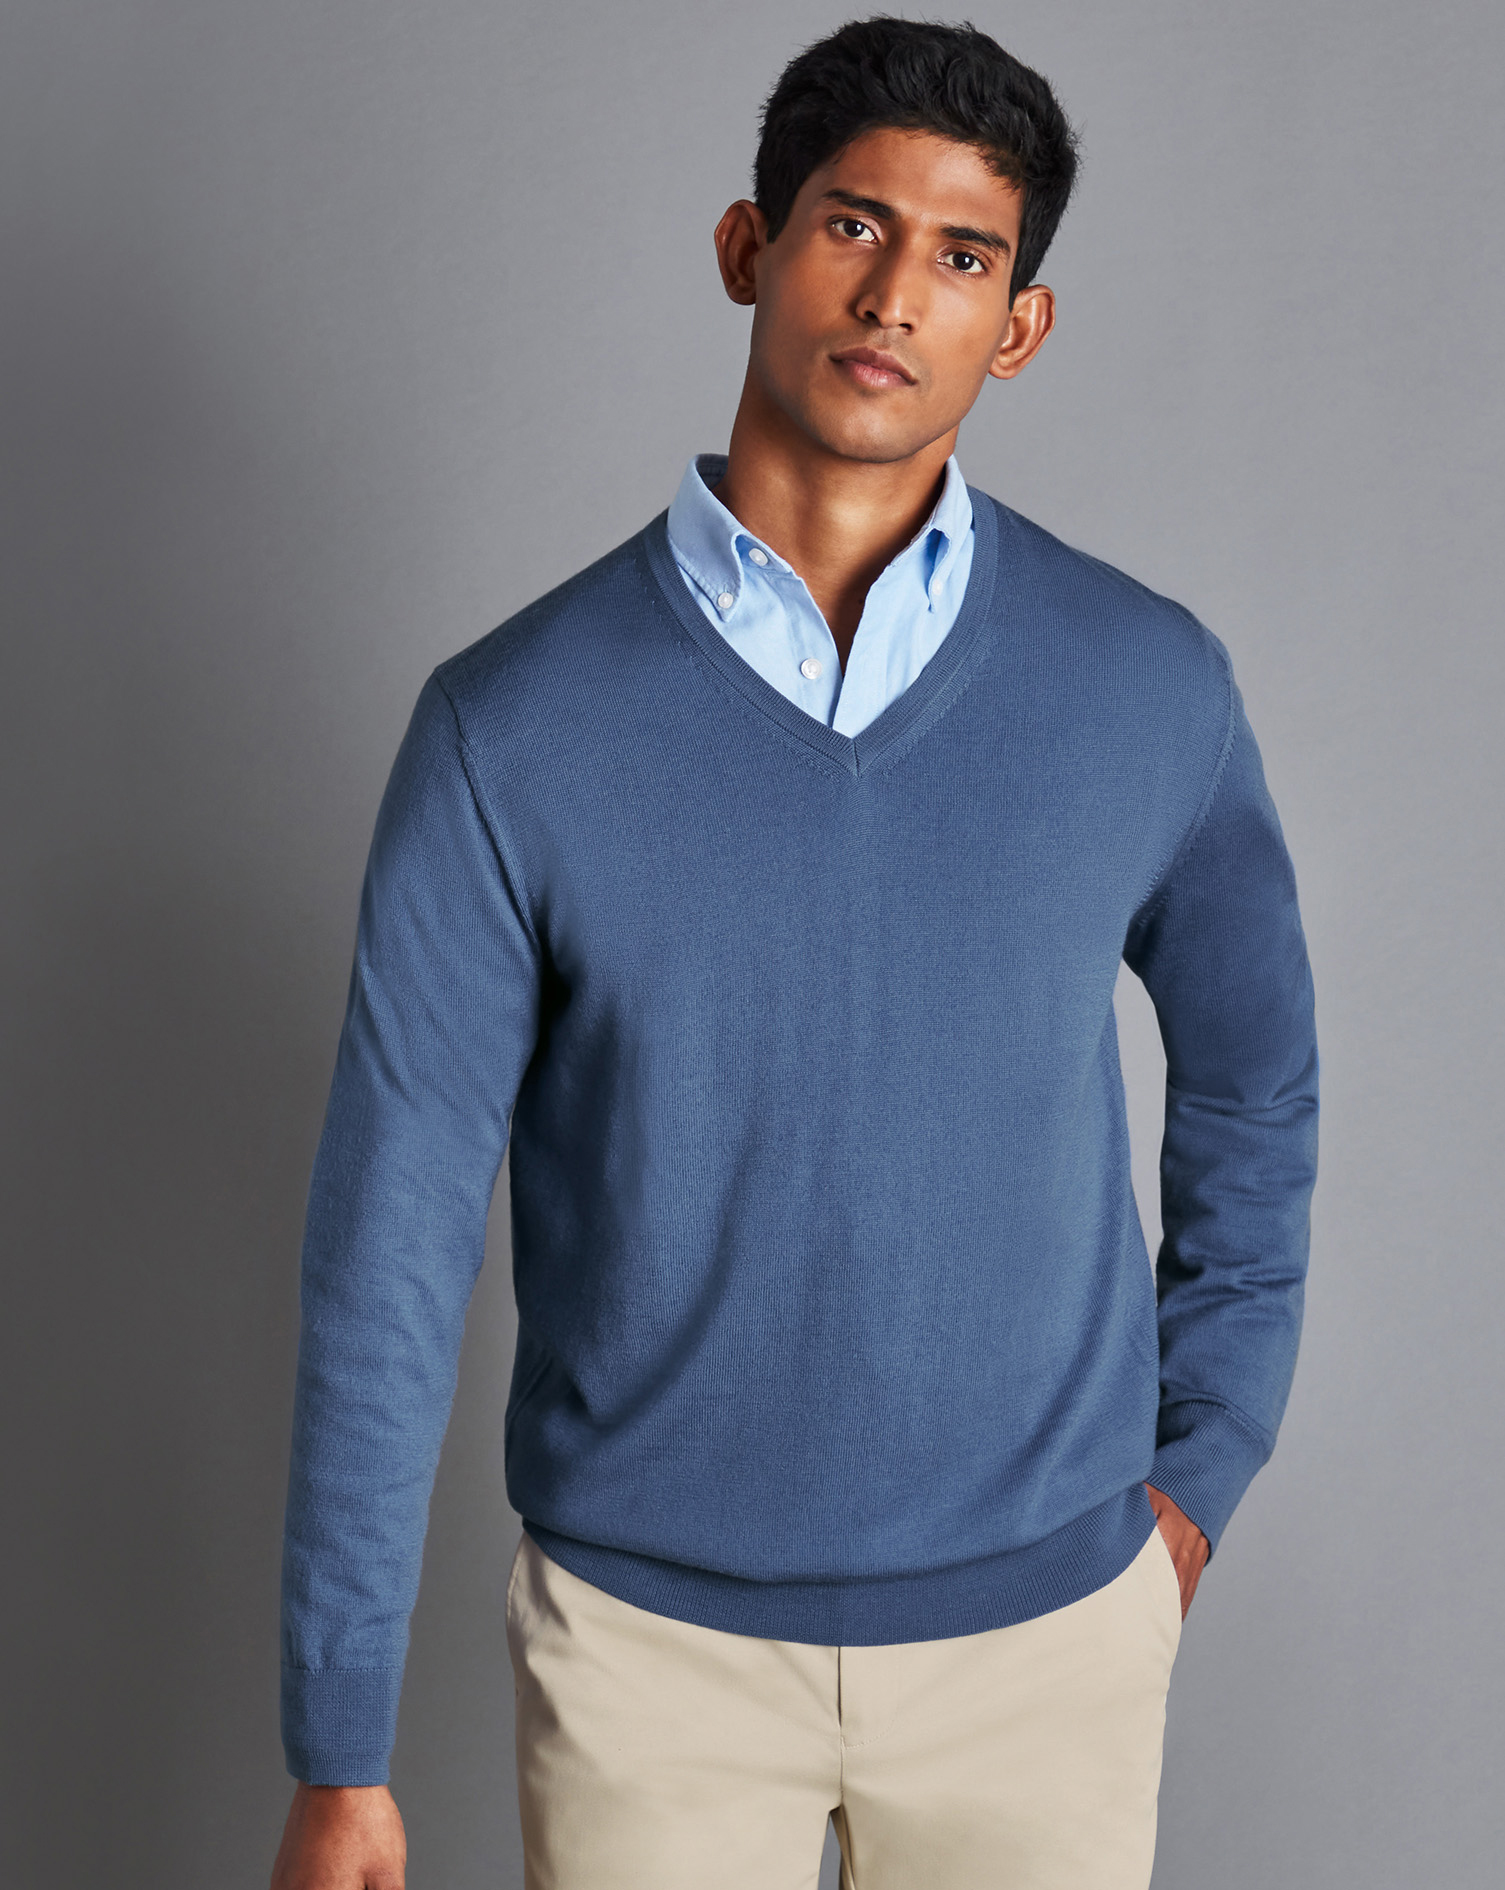 Men's Charles Tyrwhitt Merino V-Neck Sweater - Steel Blue Size Medium Wool
